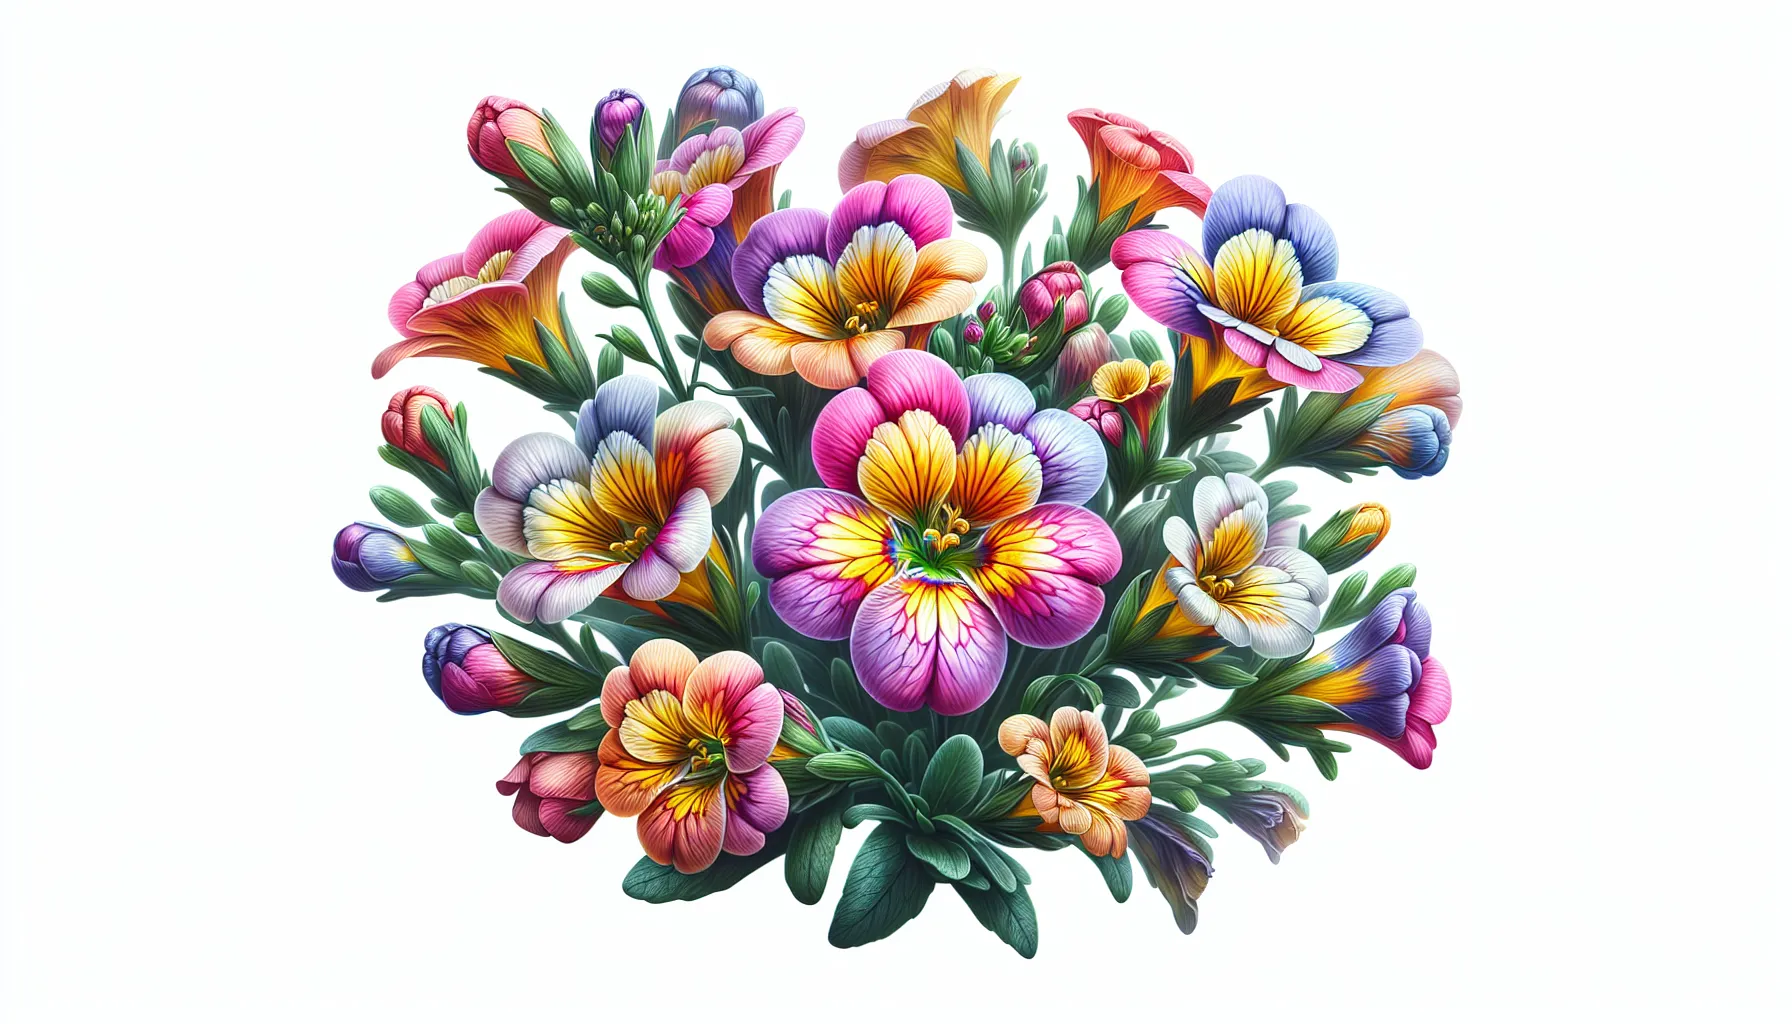 Imagen de una planta de nemesia en su esplendor, mostrando sus delicadas y coloridas flores en tonos vibrantes.